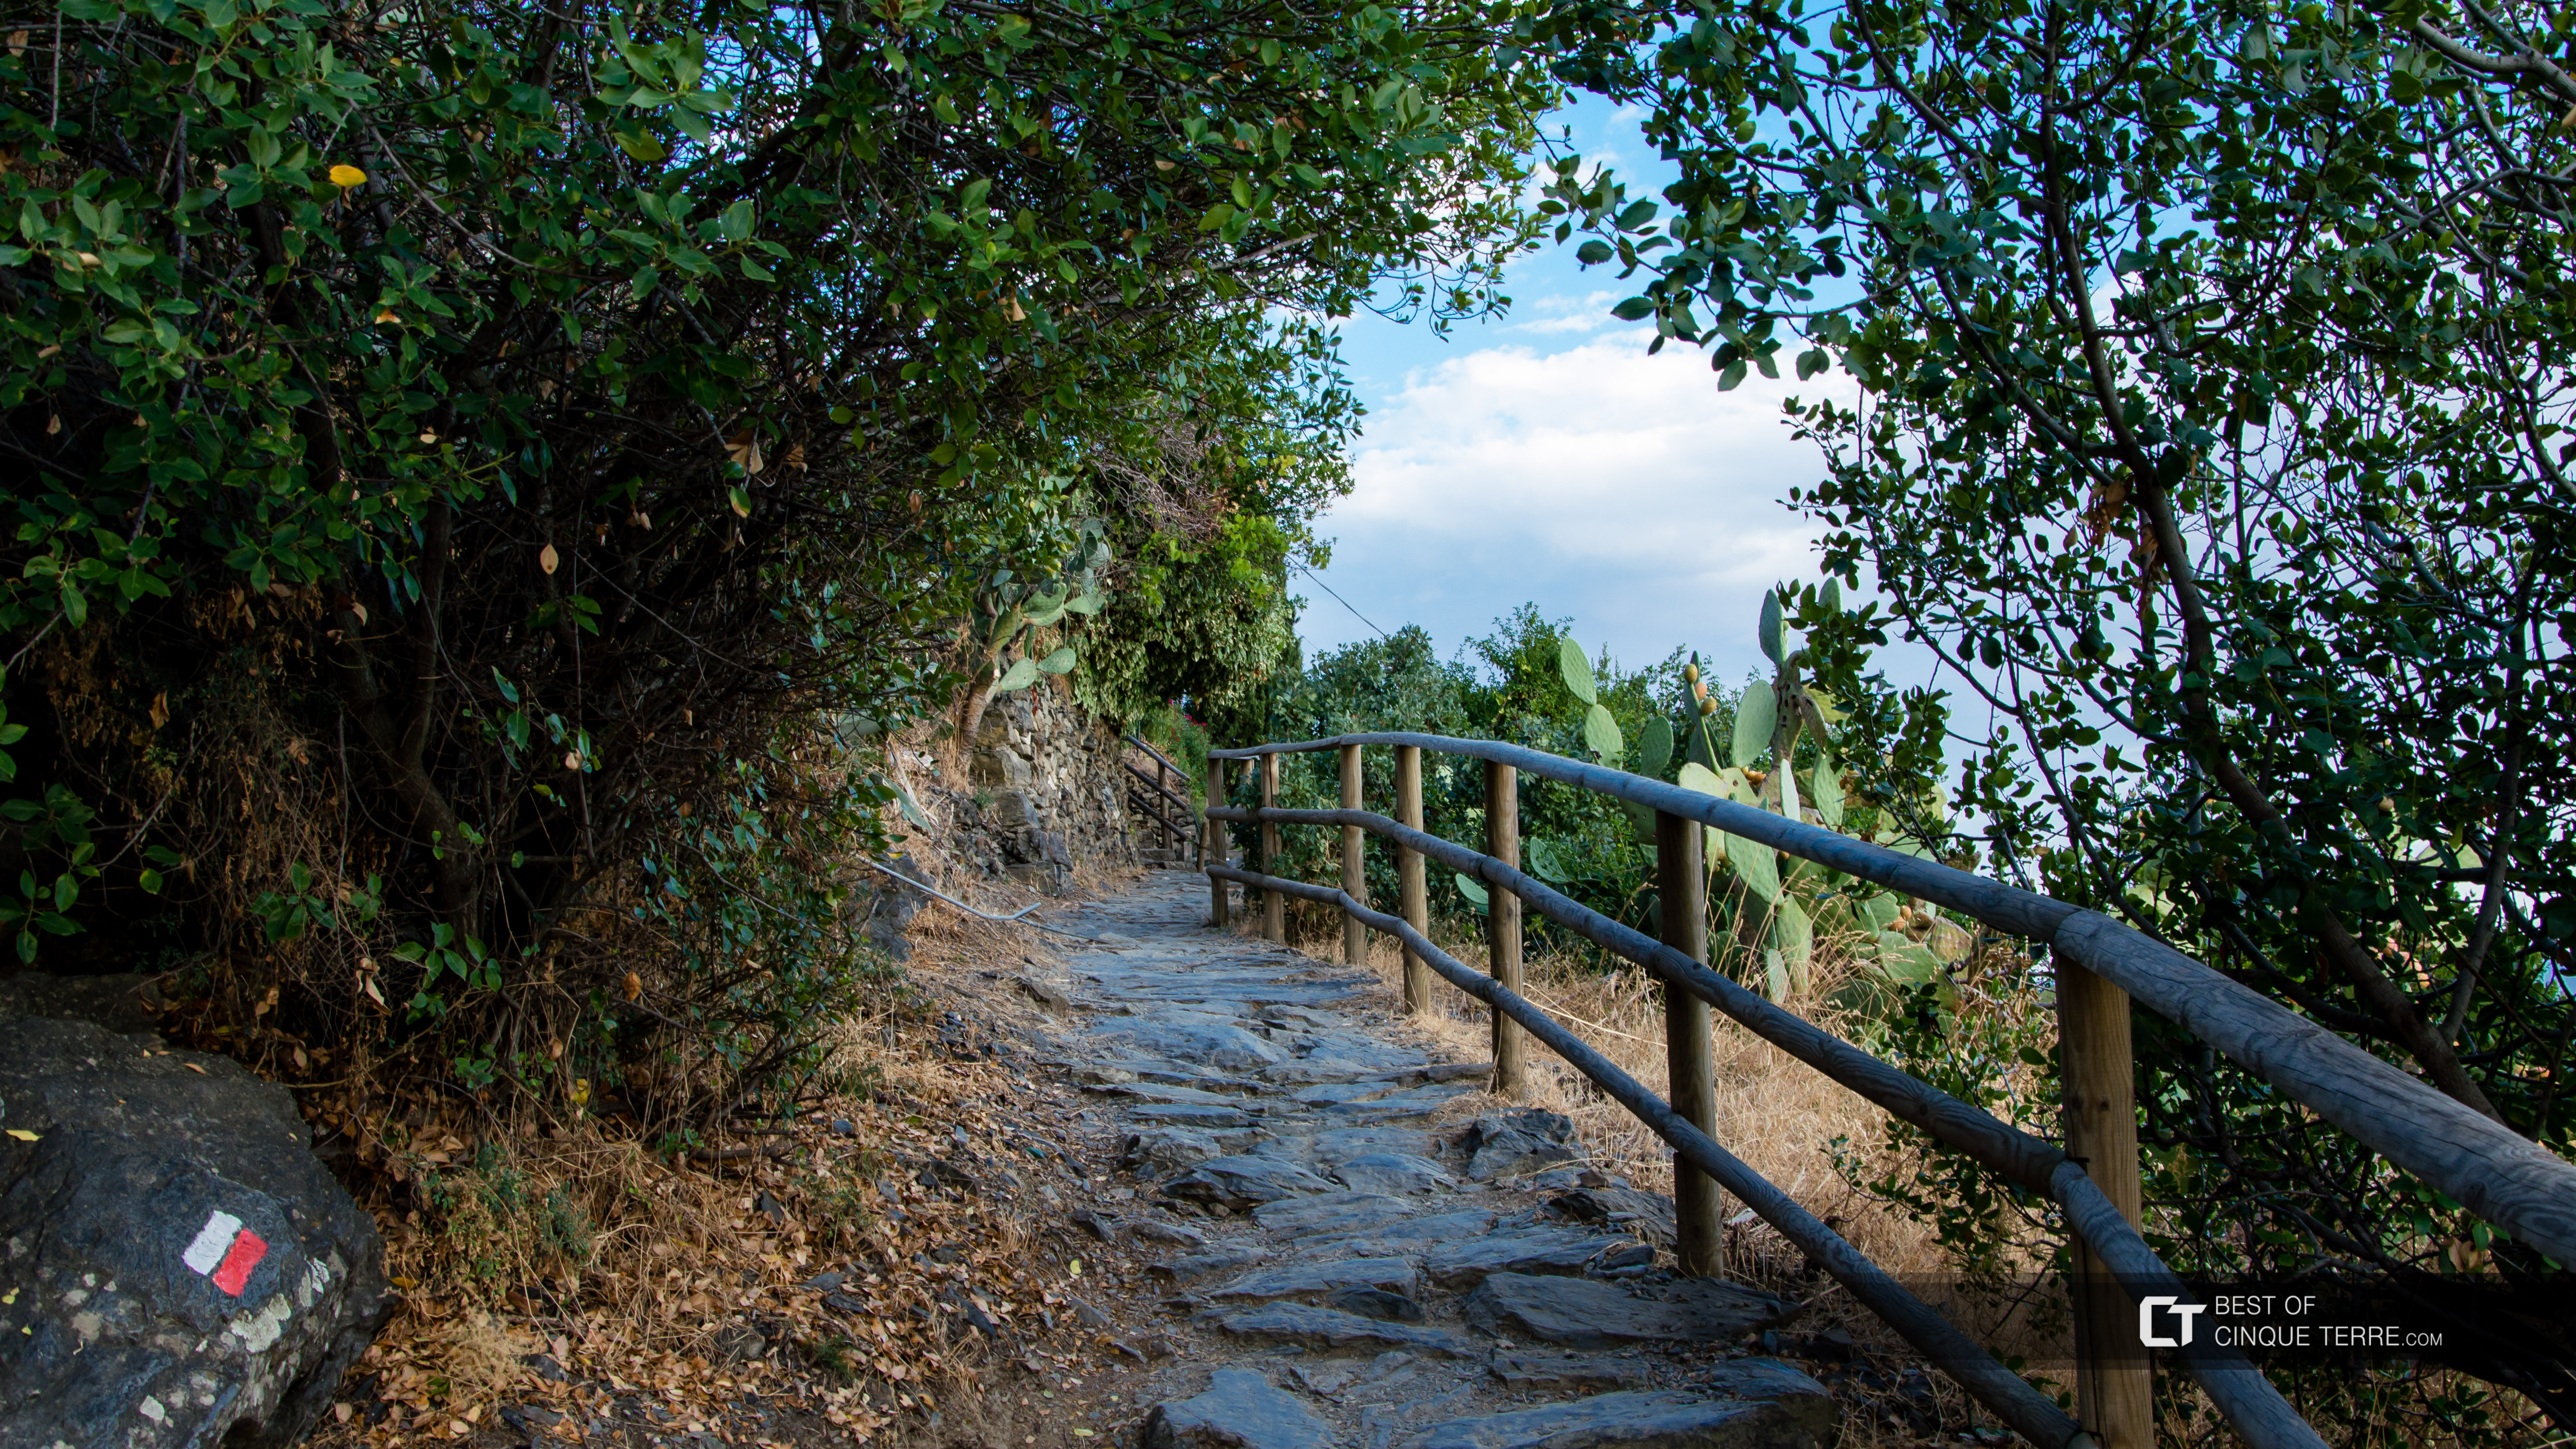 Blue Trail from Vernazza to Corniglia, Trails, Cinque Terre, Italy